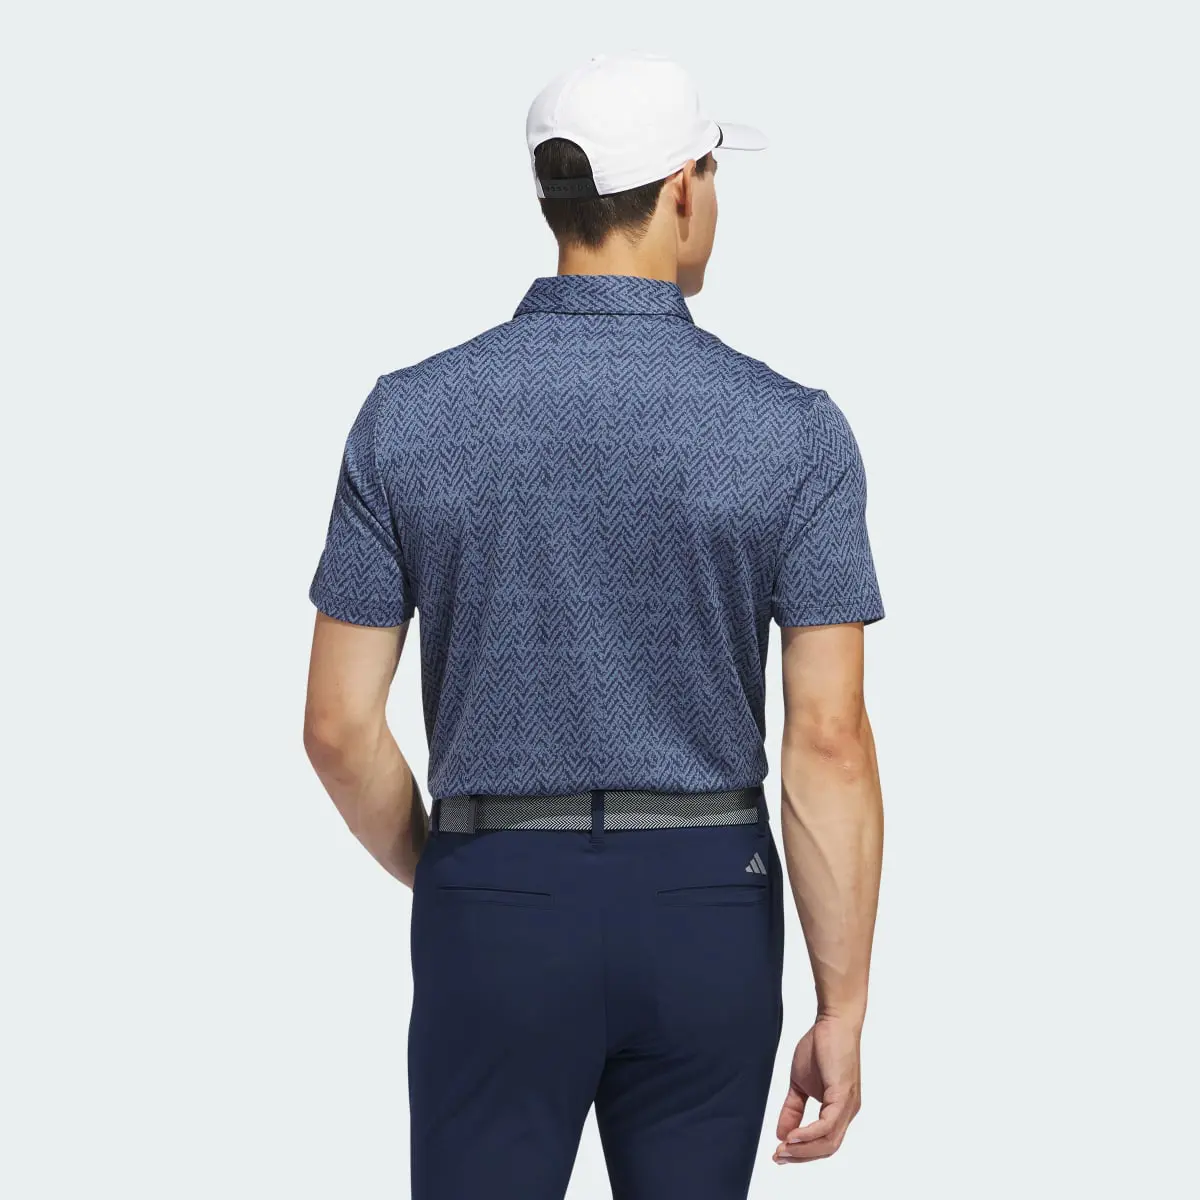 Adidas Ultimate365 Jacquard Polo Shirt. 3